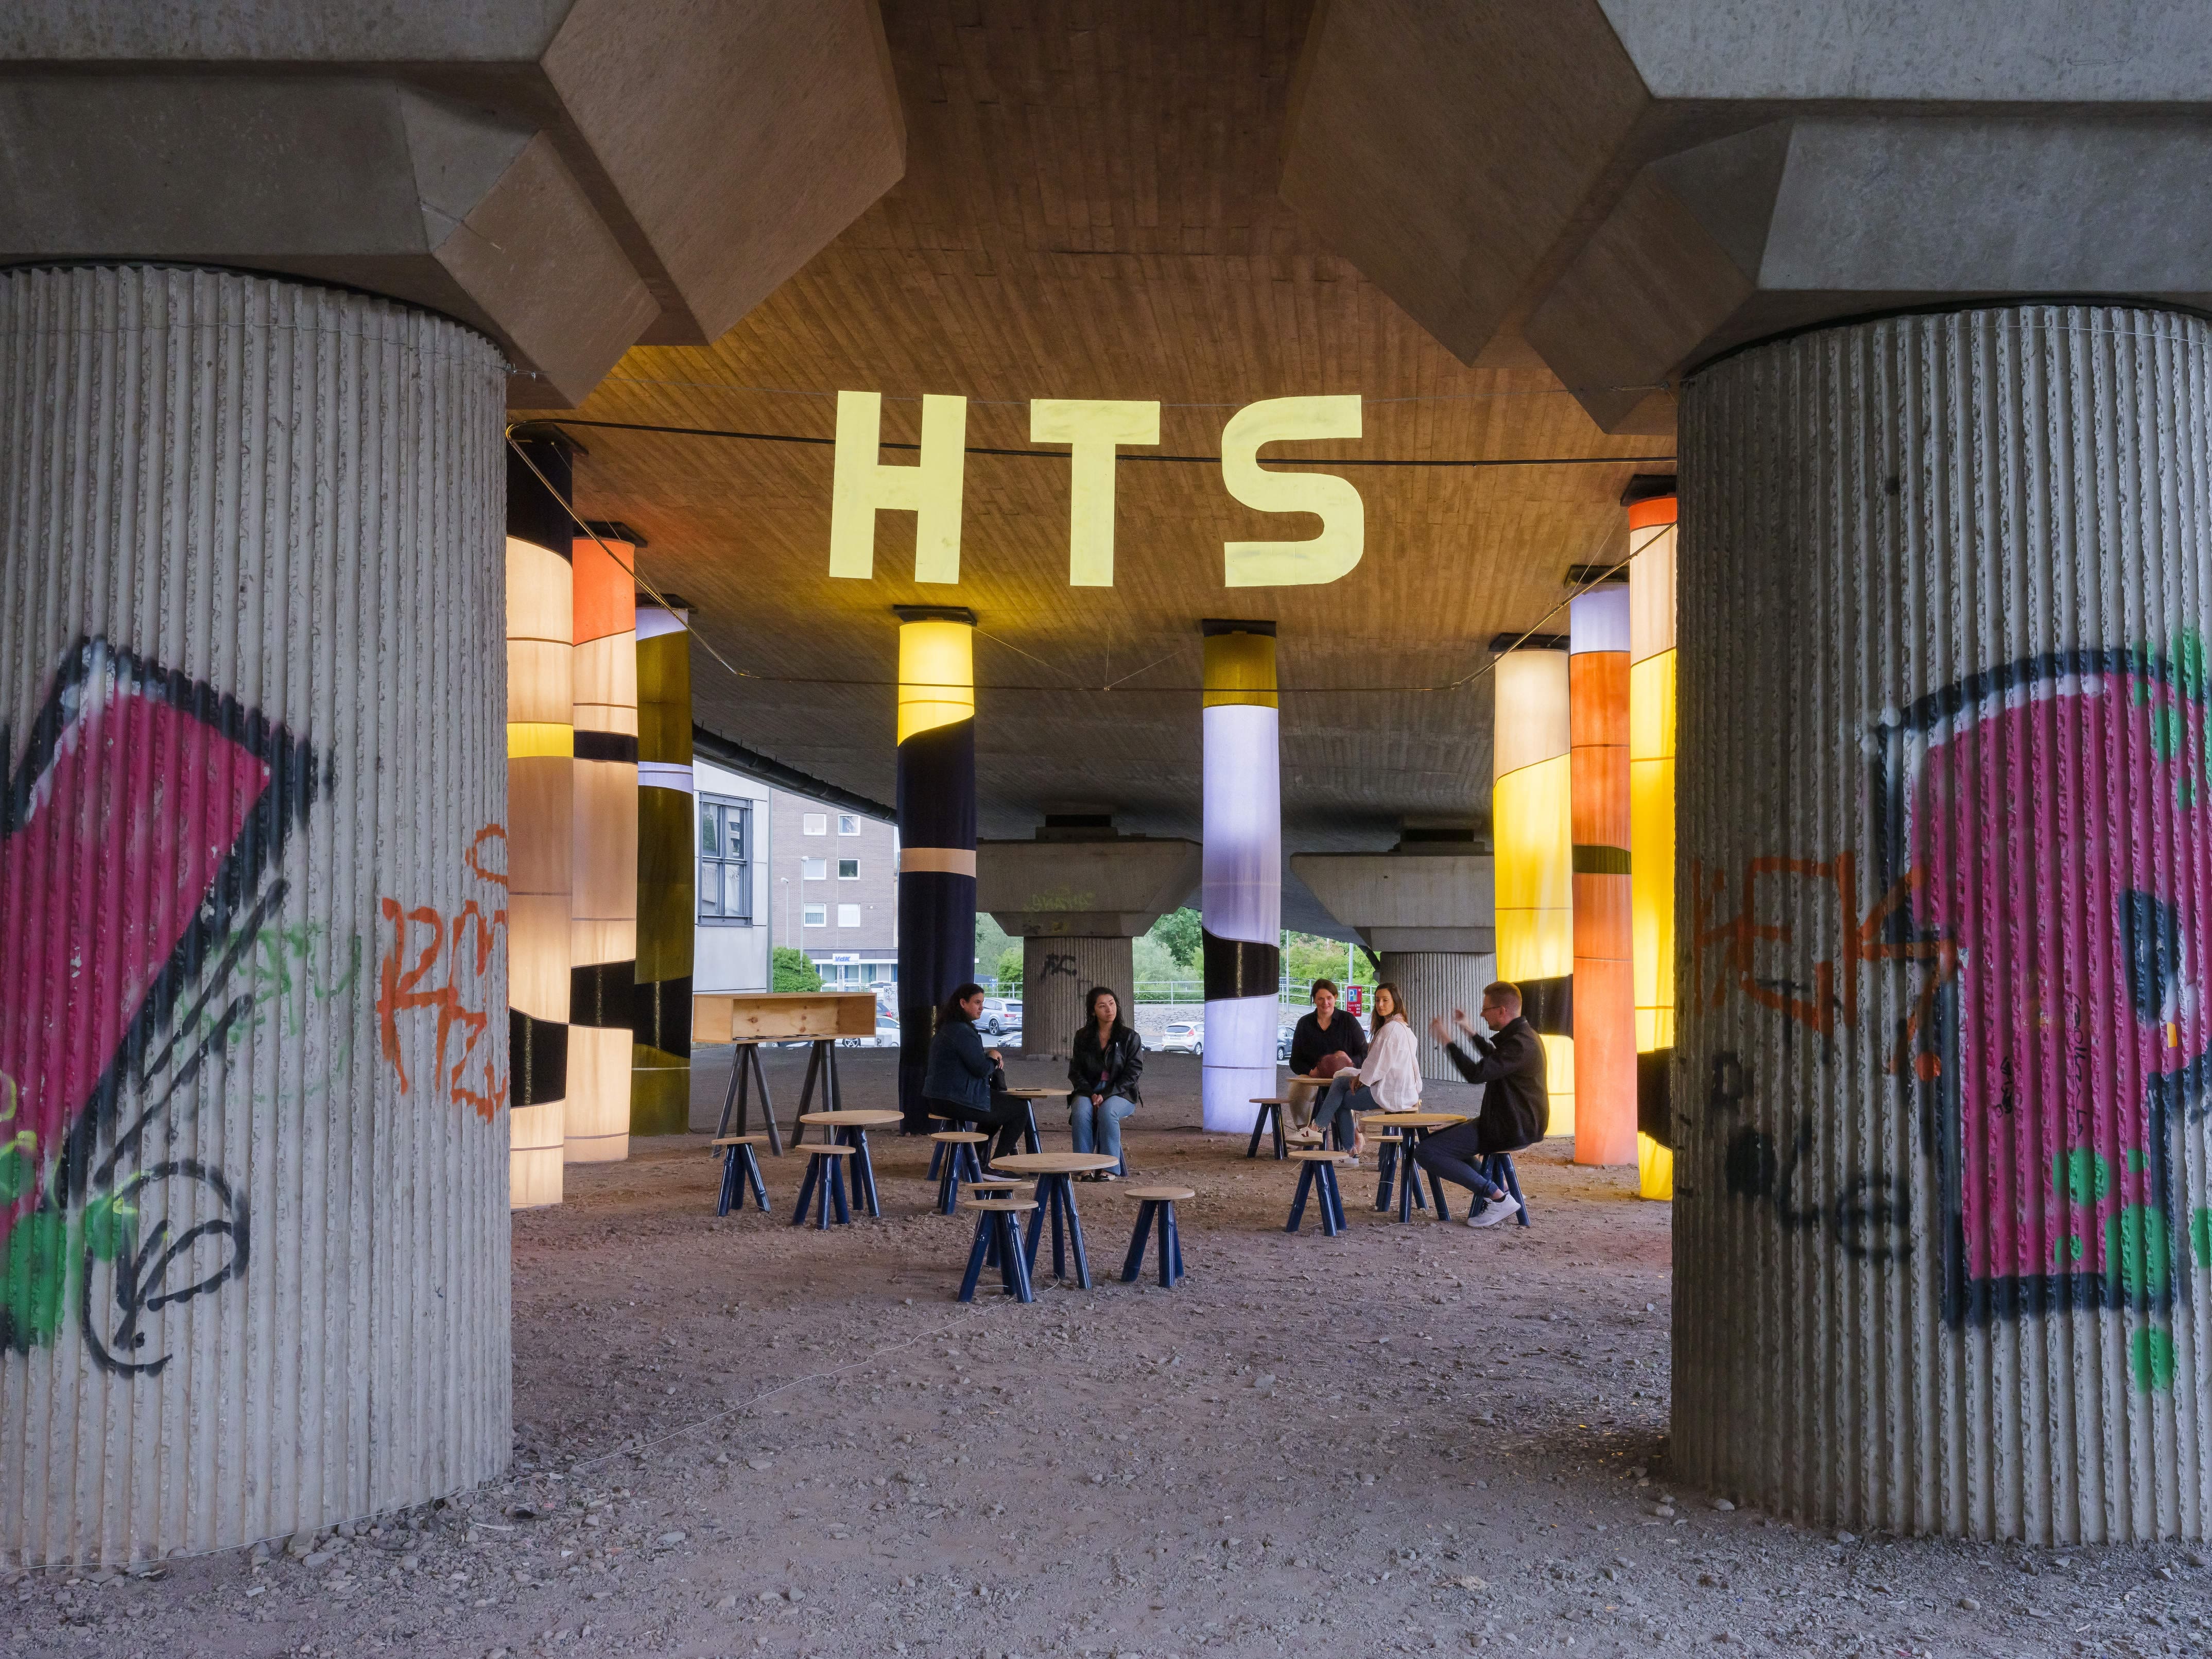 HTS wird in Siegen die Hüttentalstraße genannt, eine Stadtautobahn aus den 1970er Jahren. Auf Initiative des Kunstvereins Siegen entstand an einer Stelle Kunst im öffentlichen Raum - Foto Kunstverein Siegen